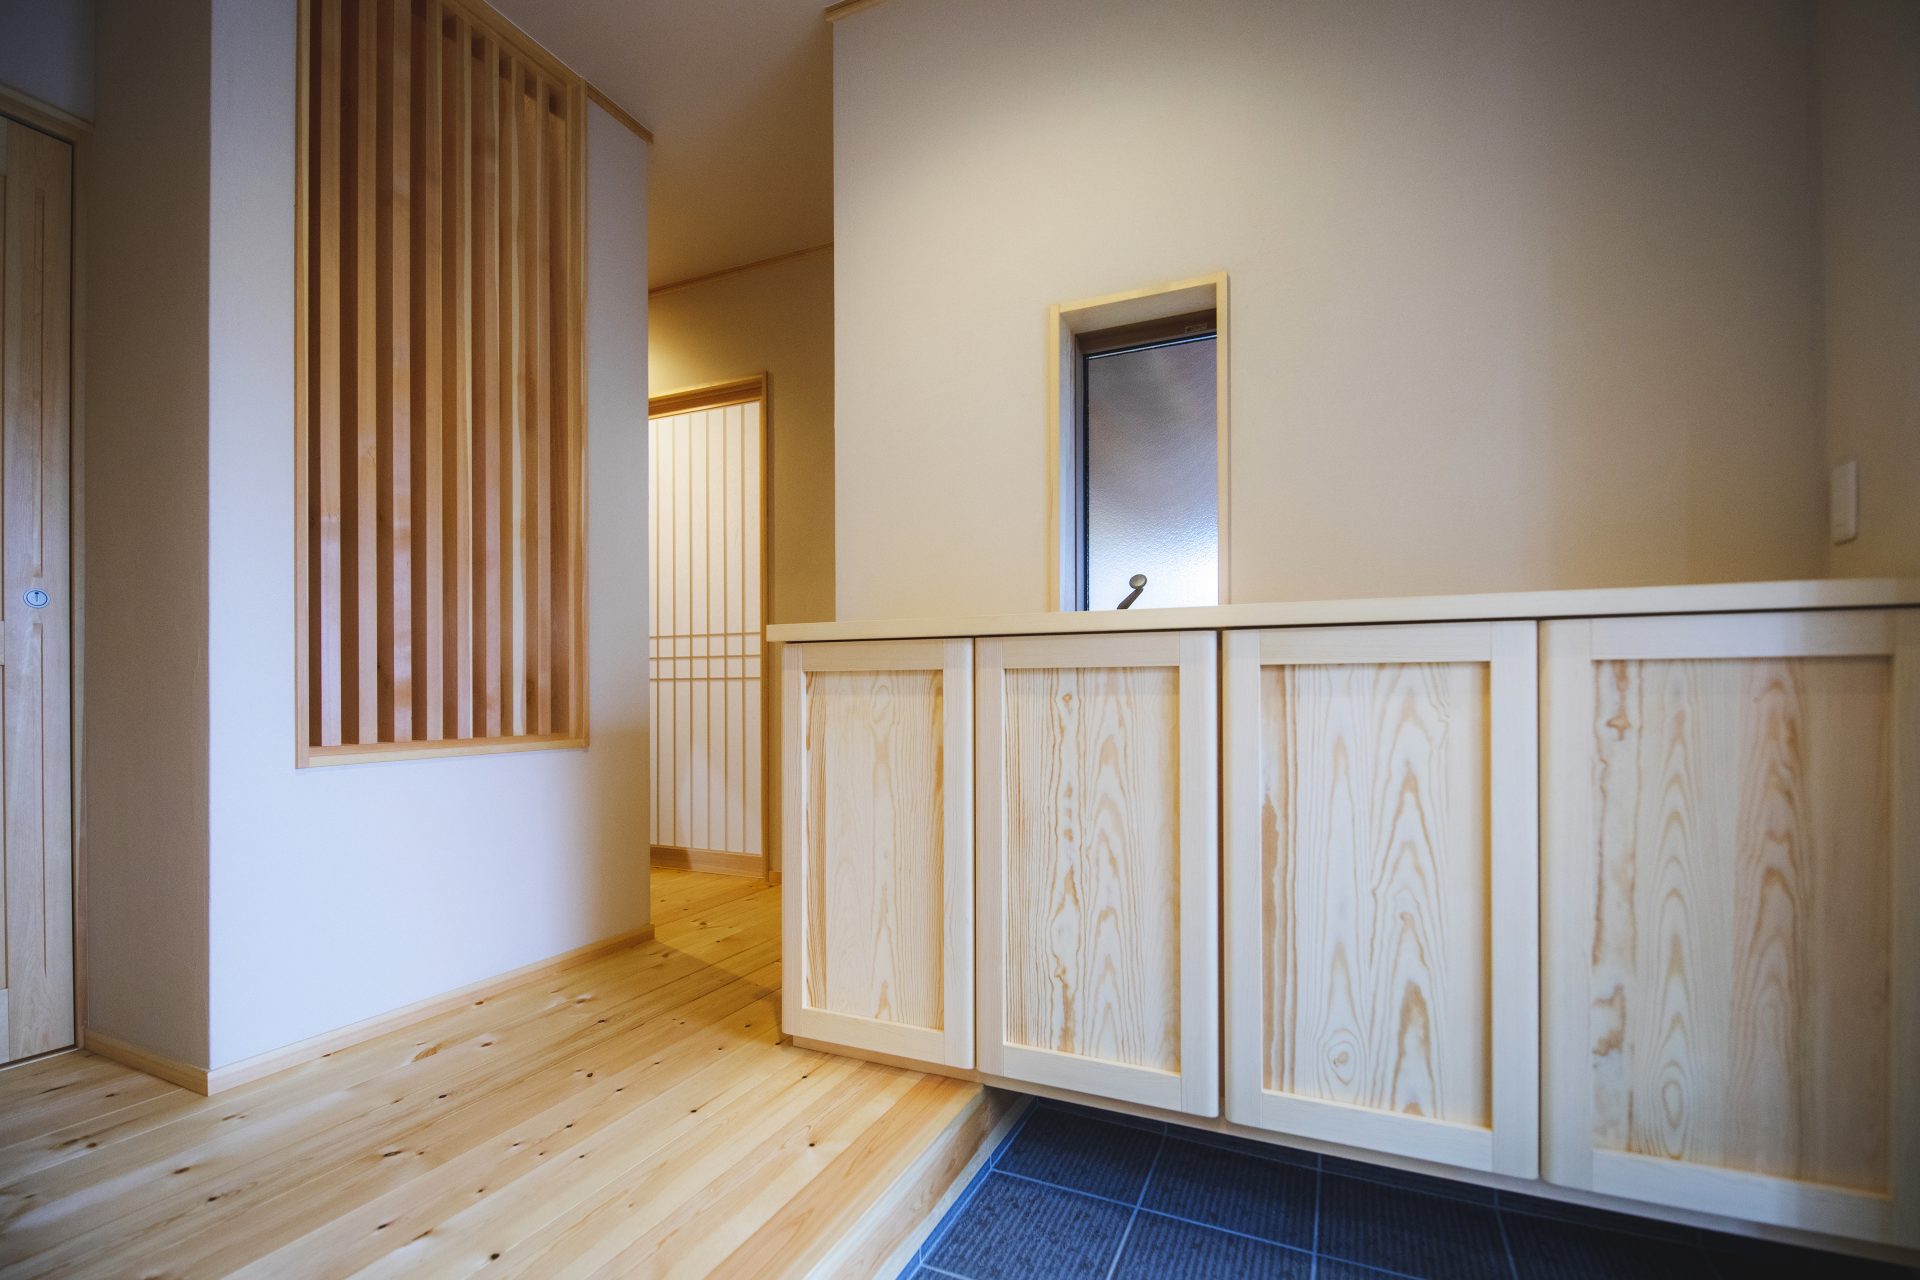 Căn nhà gỗ xây dựng theo lối kiến trúc Nhật Bản với 1 trệt 1 lửng đủ bình yên cho gia đình trẻ - Ảnh 8.